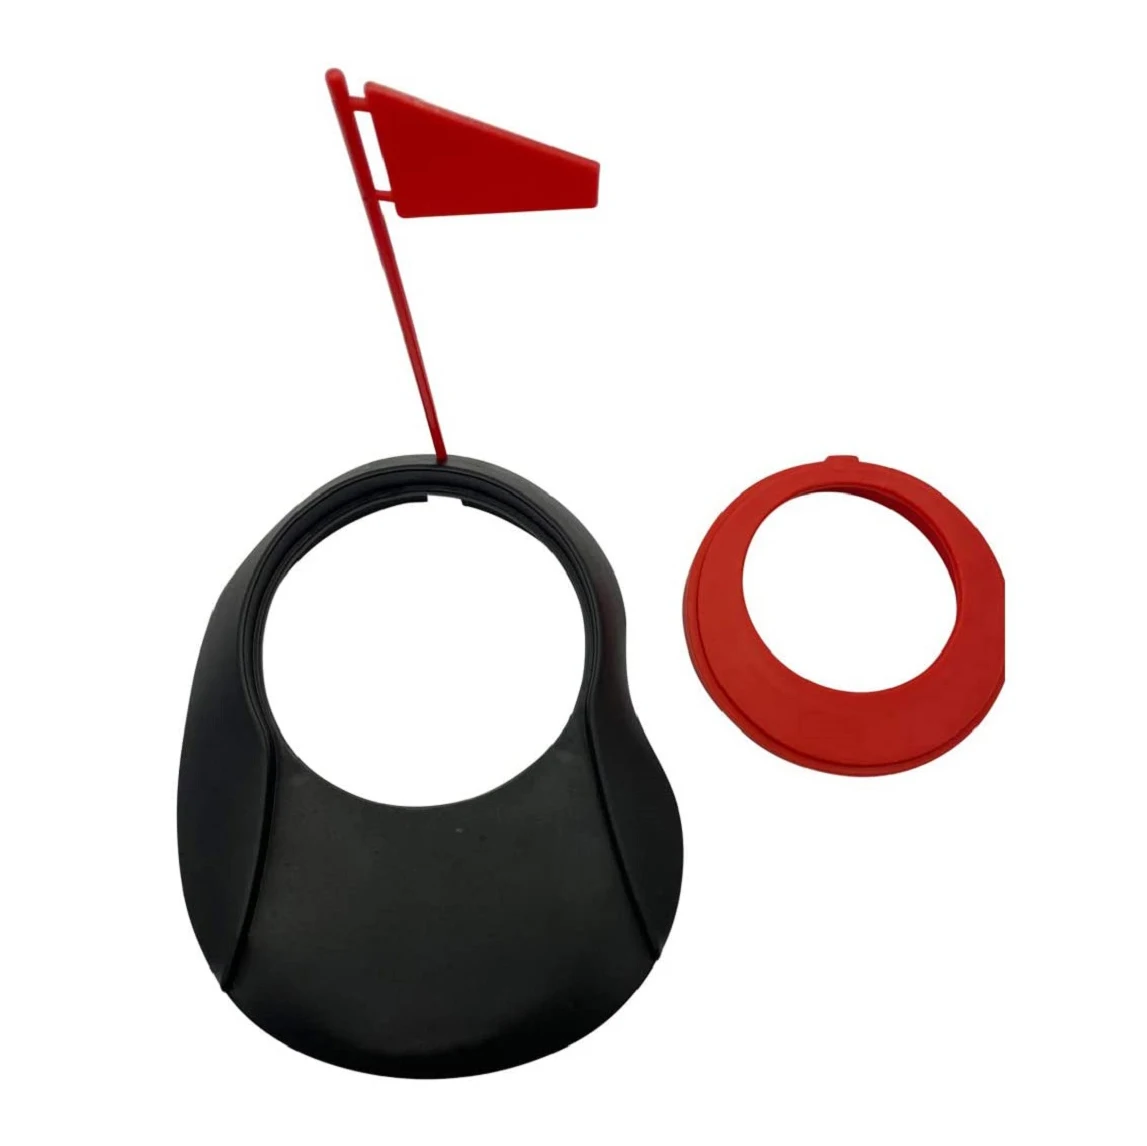 Зеленая кружка для игры в гольф, кружка с отверстиями для тренировок, резиновая кружка с отверстиями, мягкая зеленая кружка с флагом